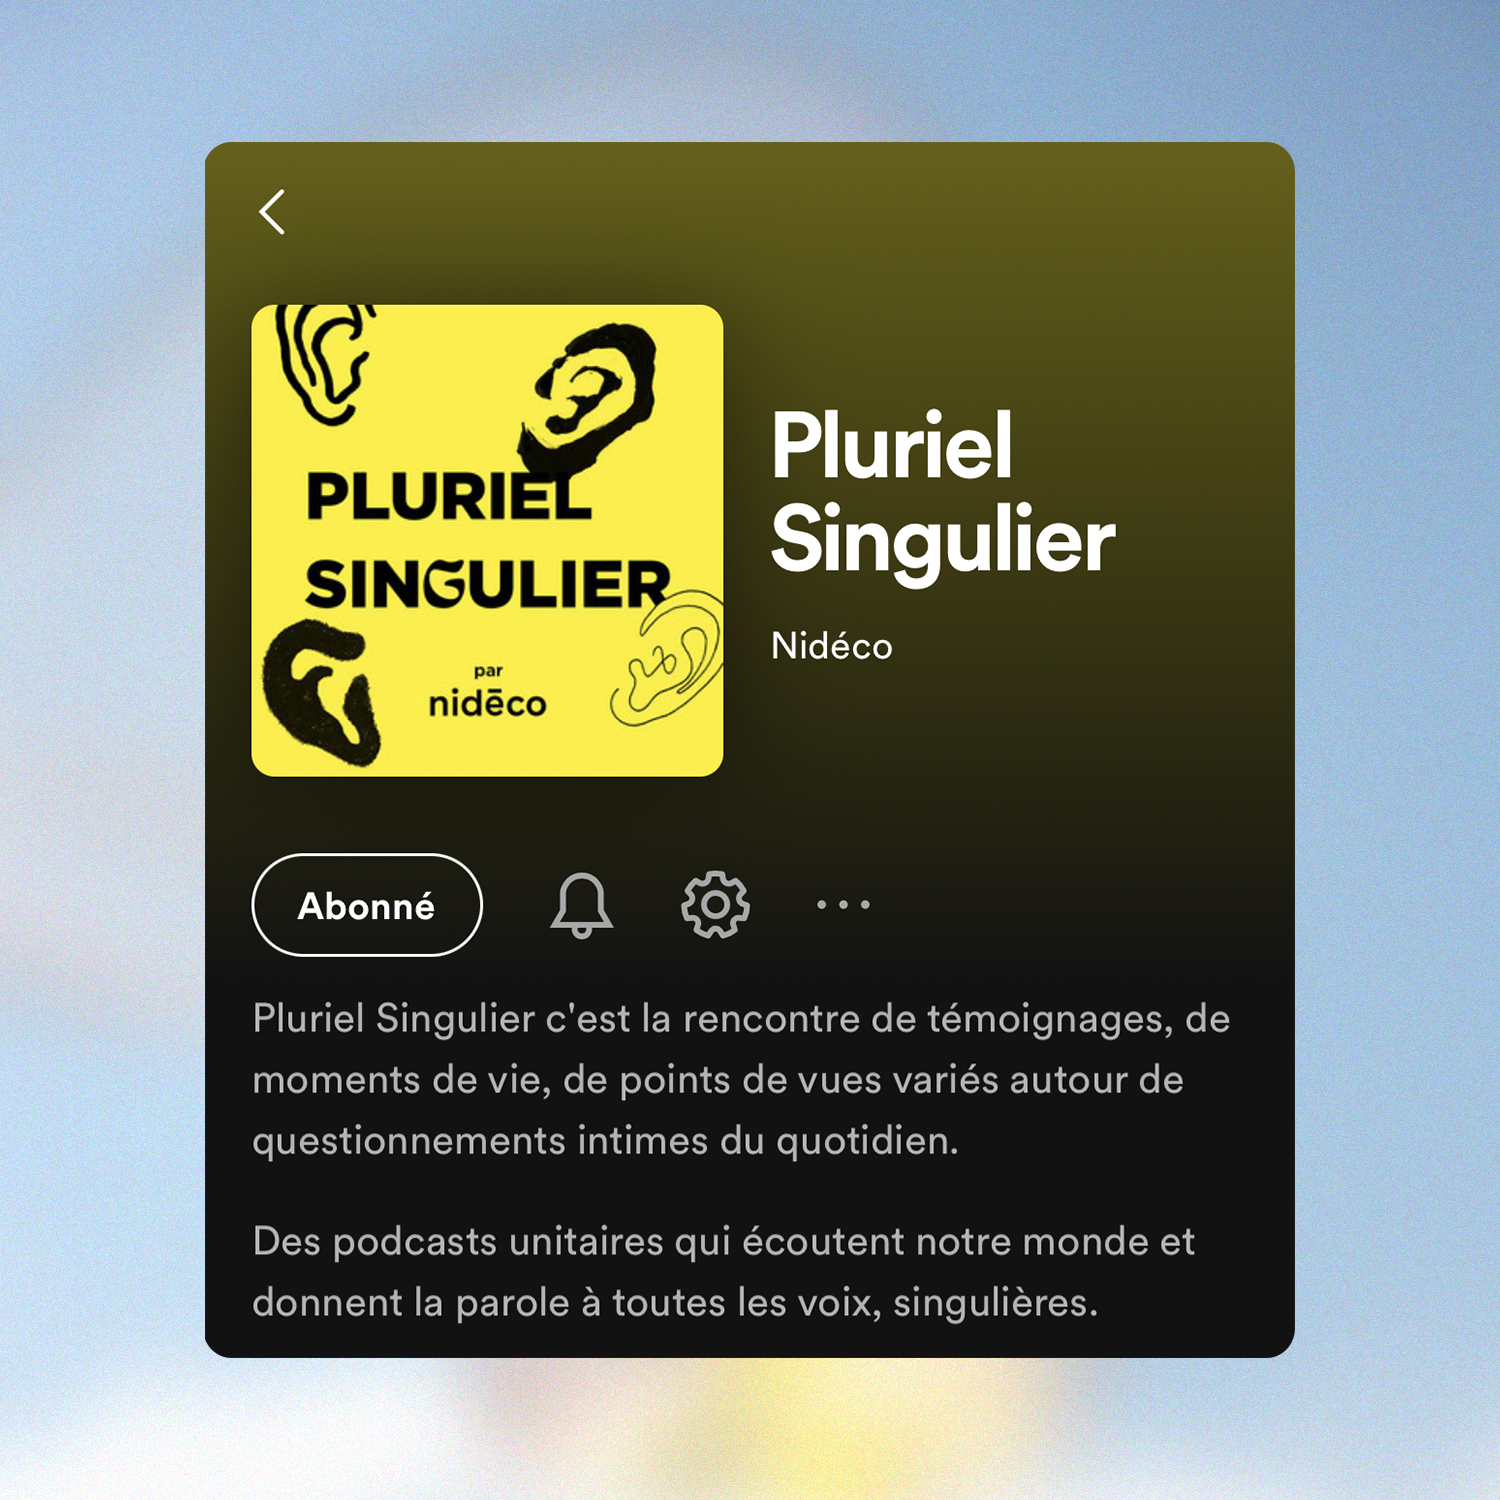 Nidéco podcast Pluriel Singulier écouter